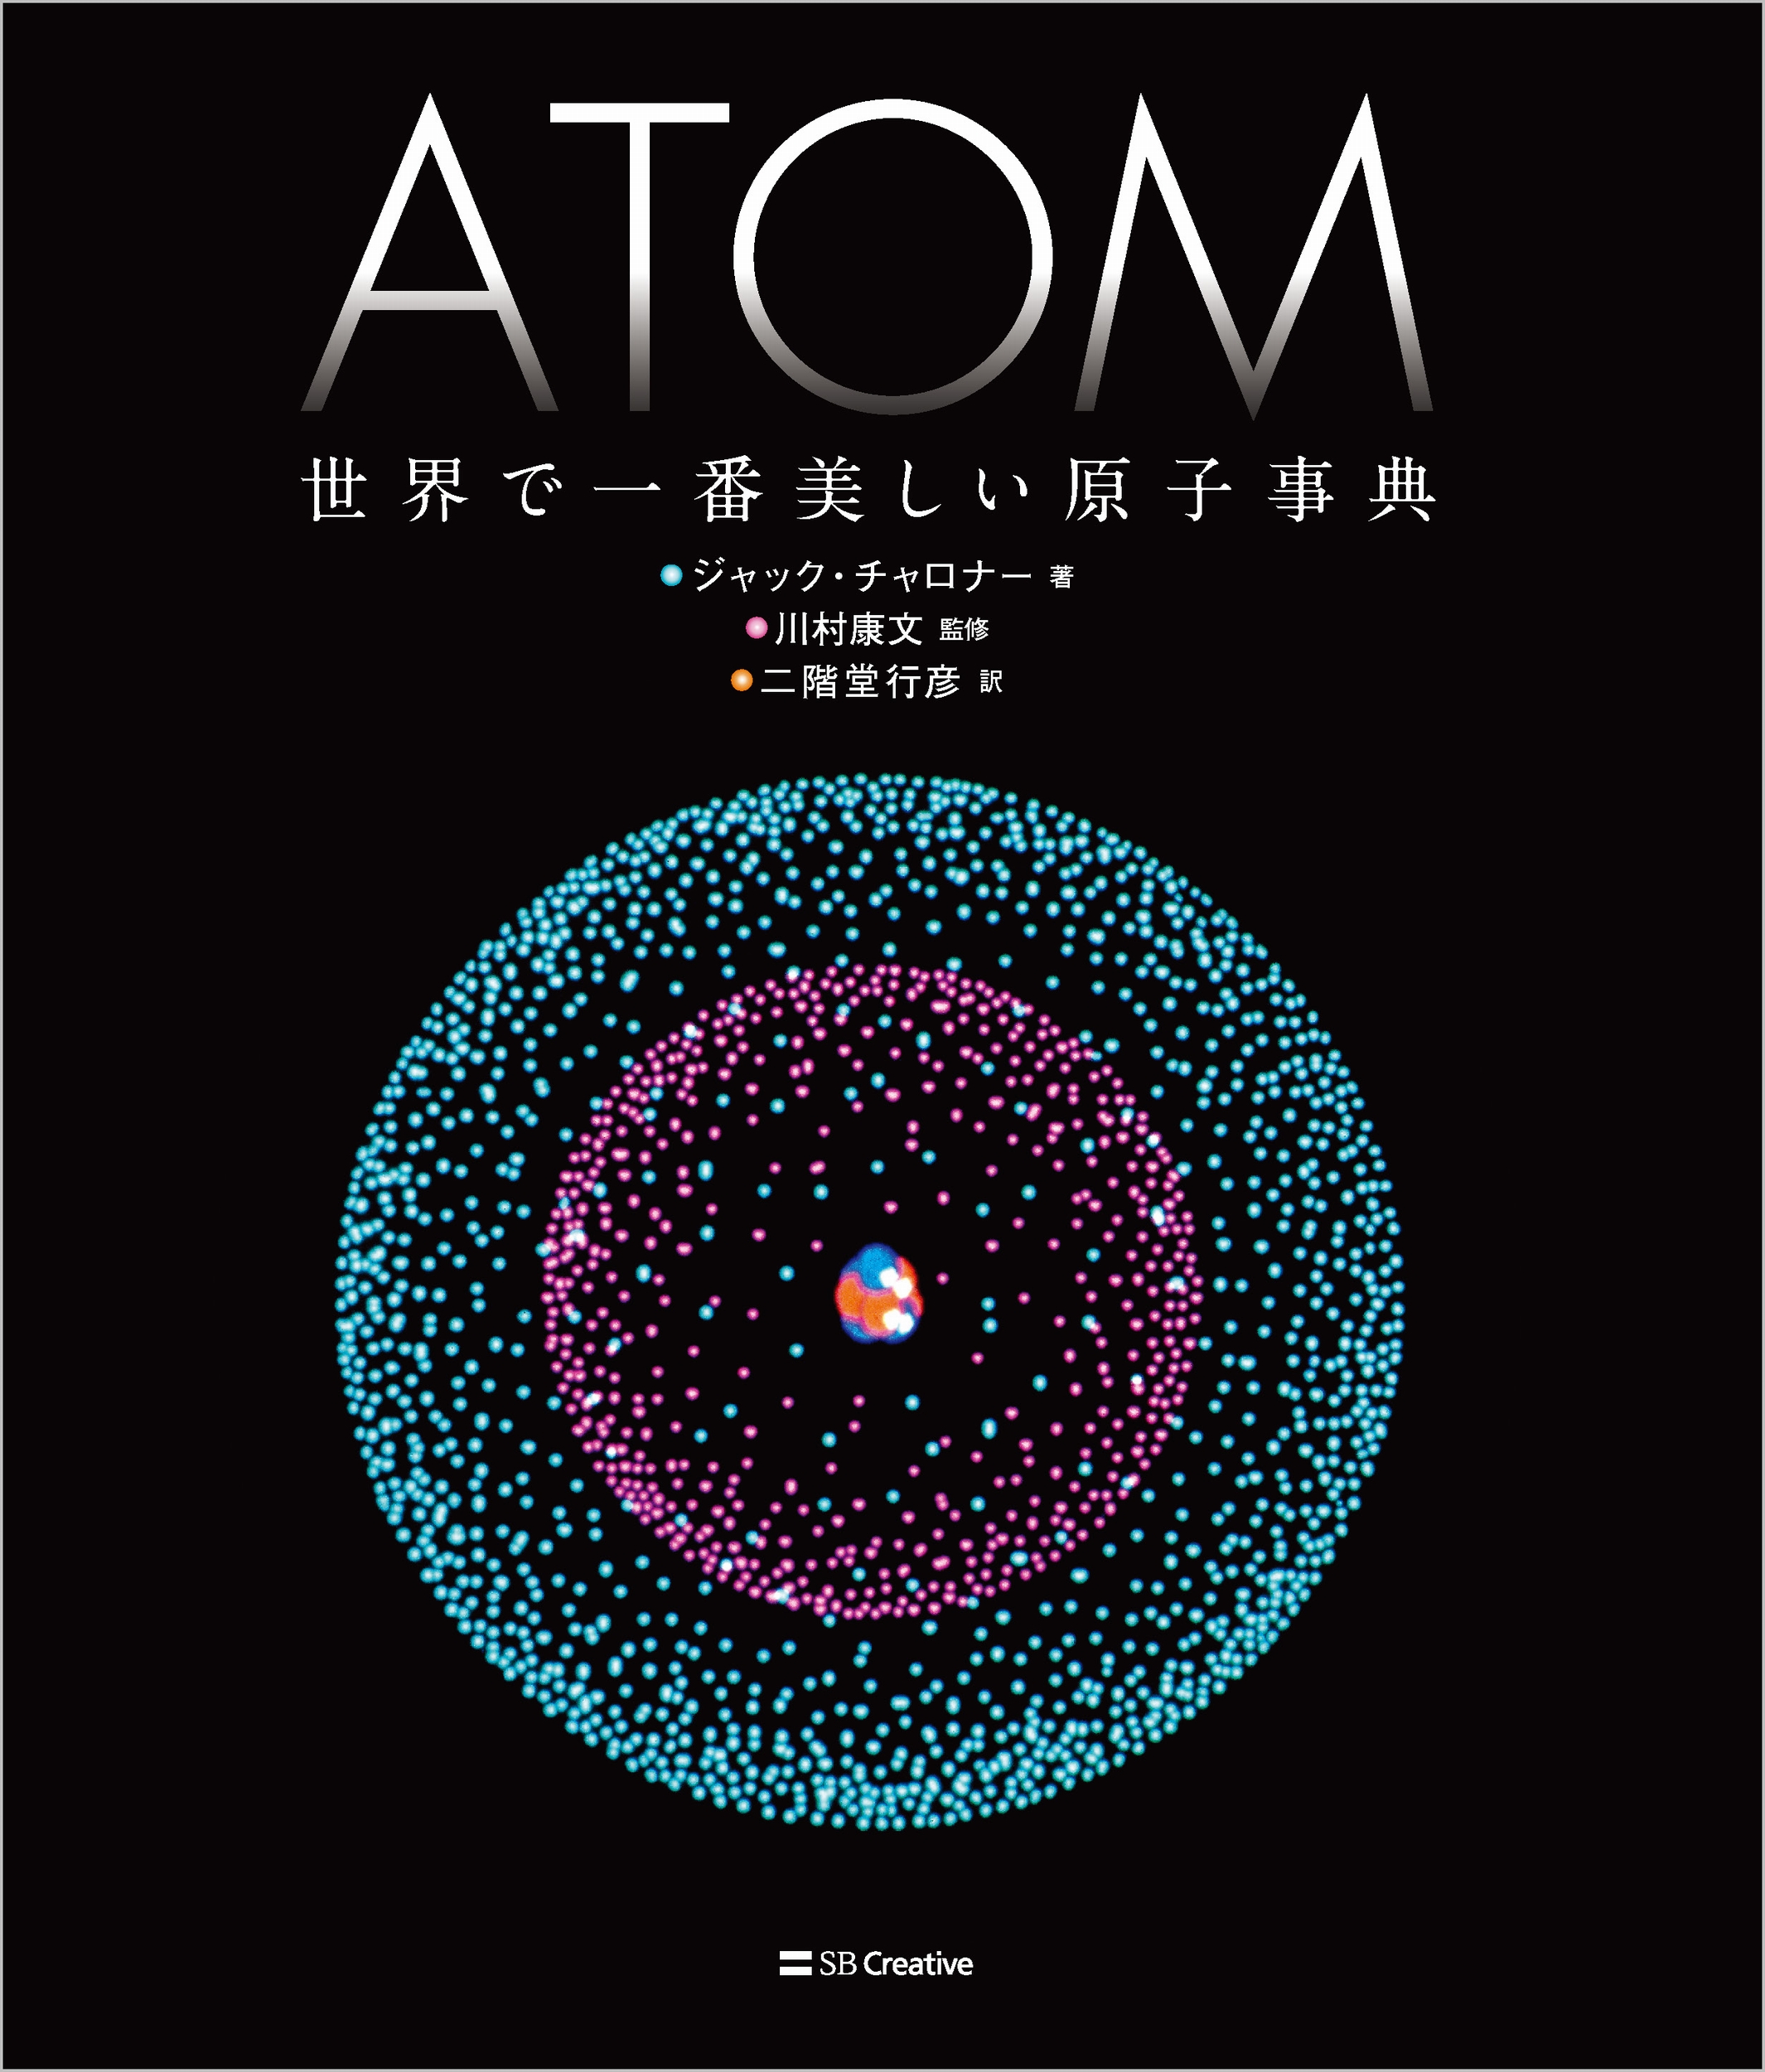 ATOM 世界で一番美しい原子事典の商品画像